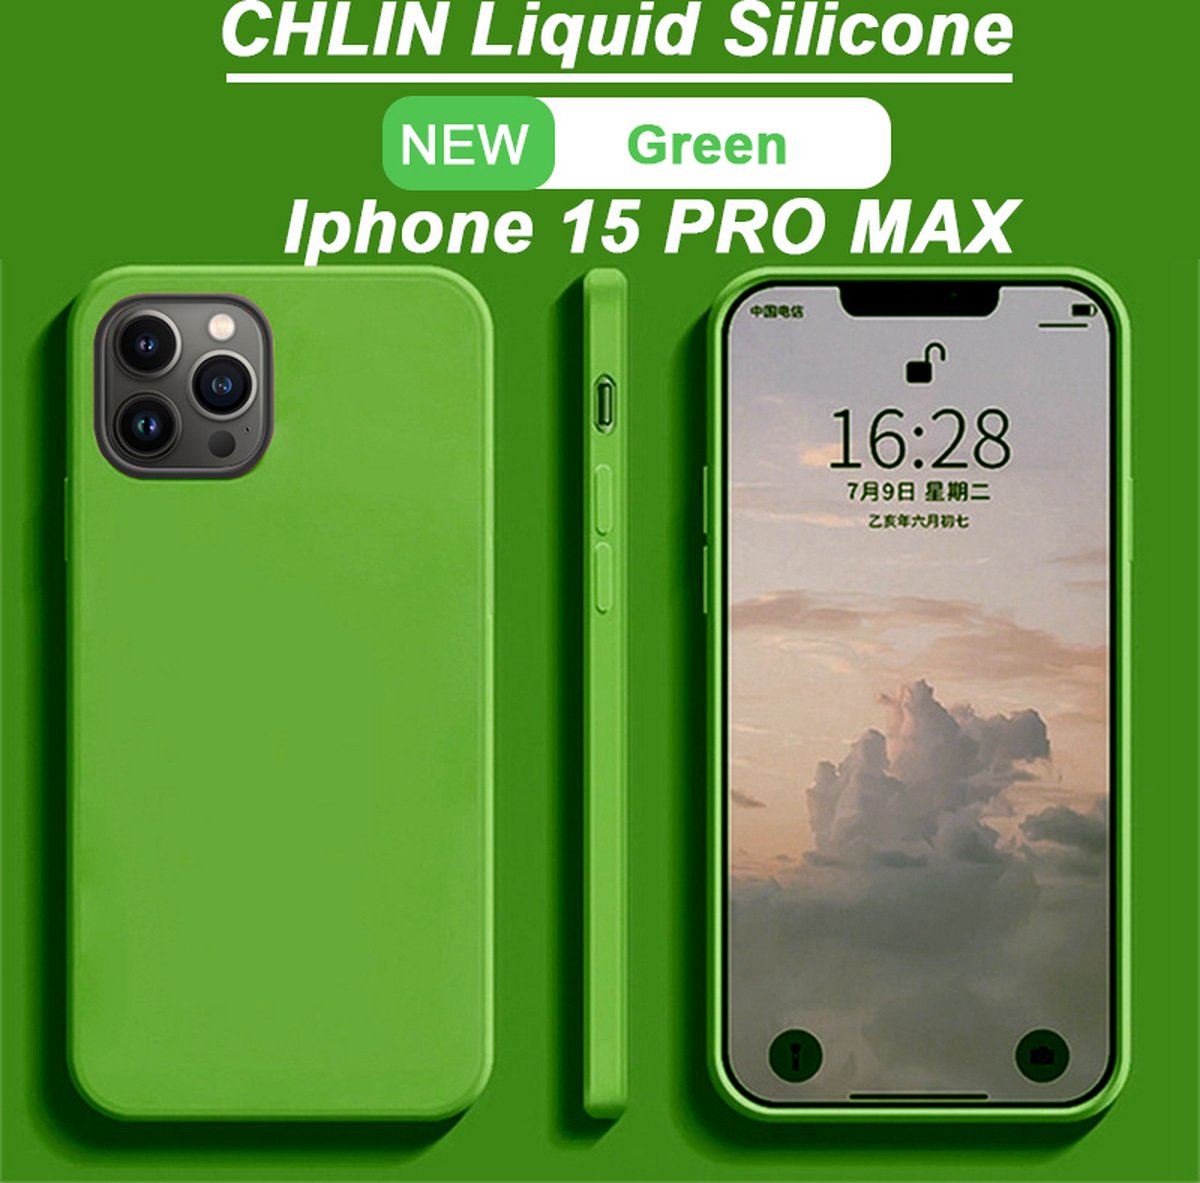 CL CHLIN® Premium Siliconen Case Iphone 15 PRO MAX Groen - Iphone 15 PRO MAX hoesje - Iphone 15 PRO MAX case - Iphone 15 PRO MAX hoes - Silicone hoesje - Iphone 15 PRO MAX protection - Iphone 15 PRO MAX protector